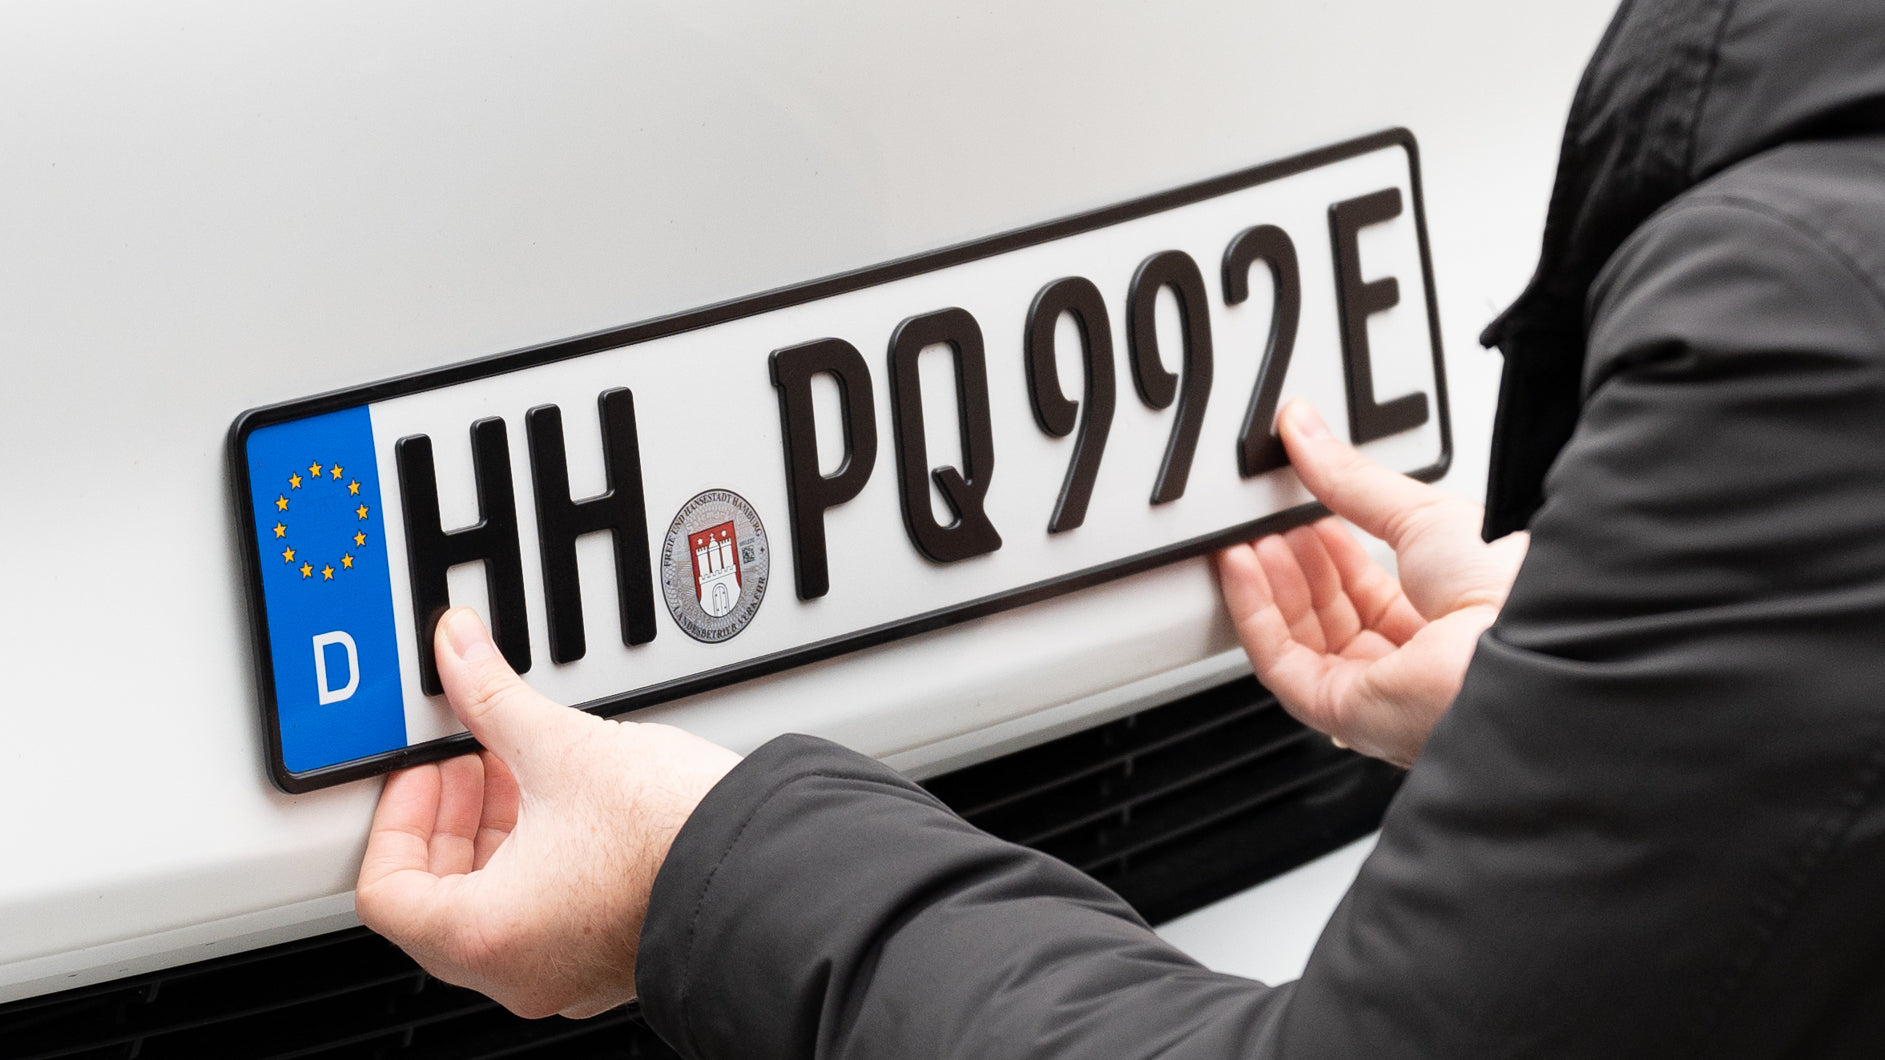 Legal magnetic license plate holder for Tesla Model 3/Y